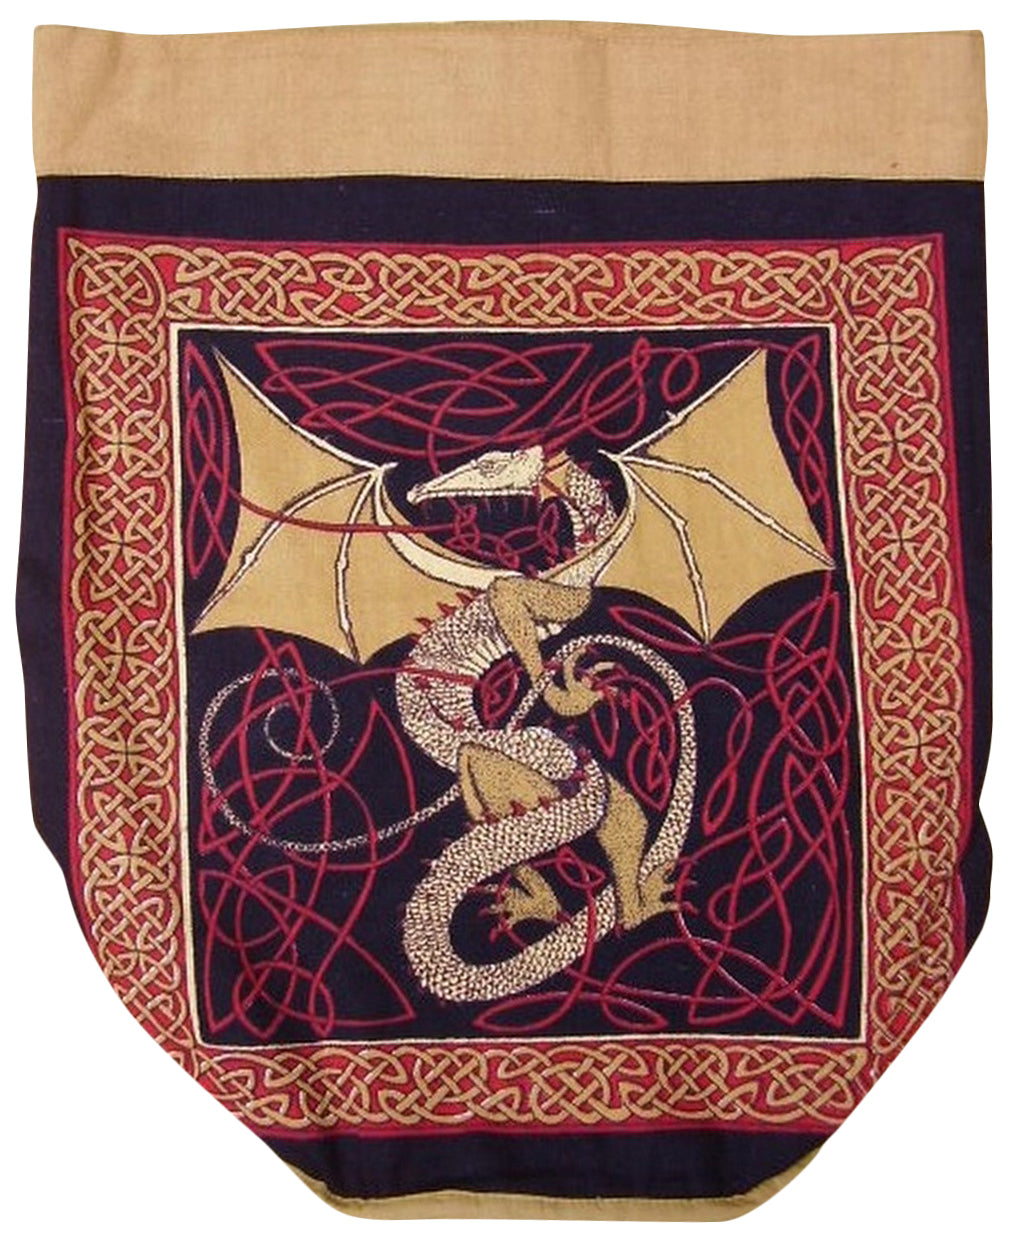 Mochila Celtic Dragon de algodón resistente, 16 x 18, color rojo 